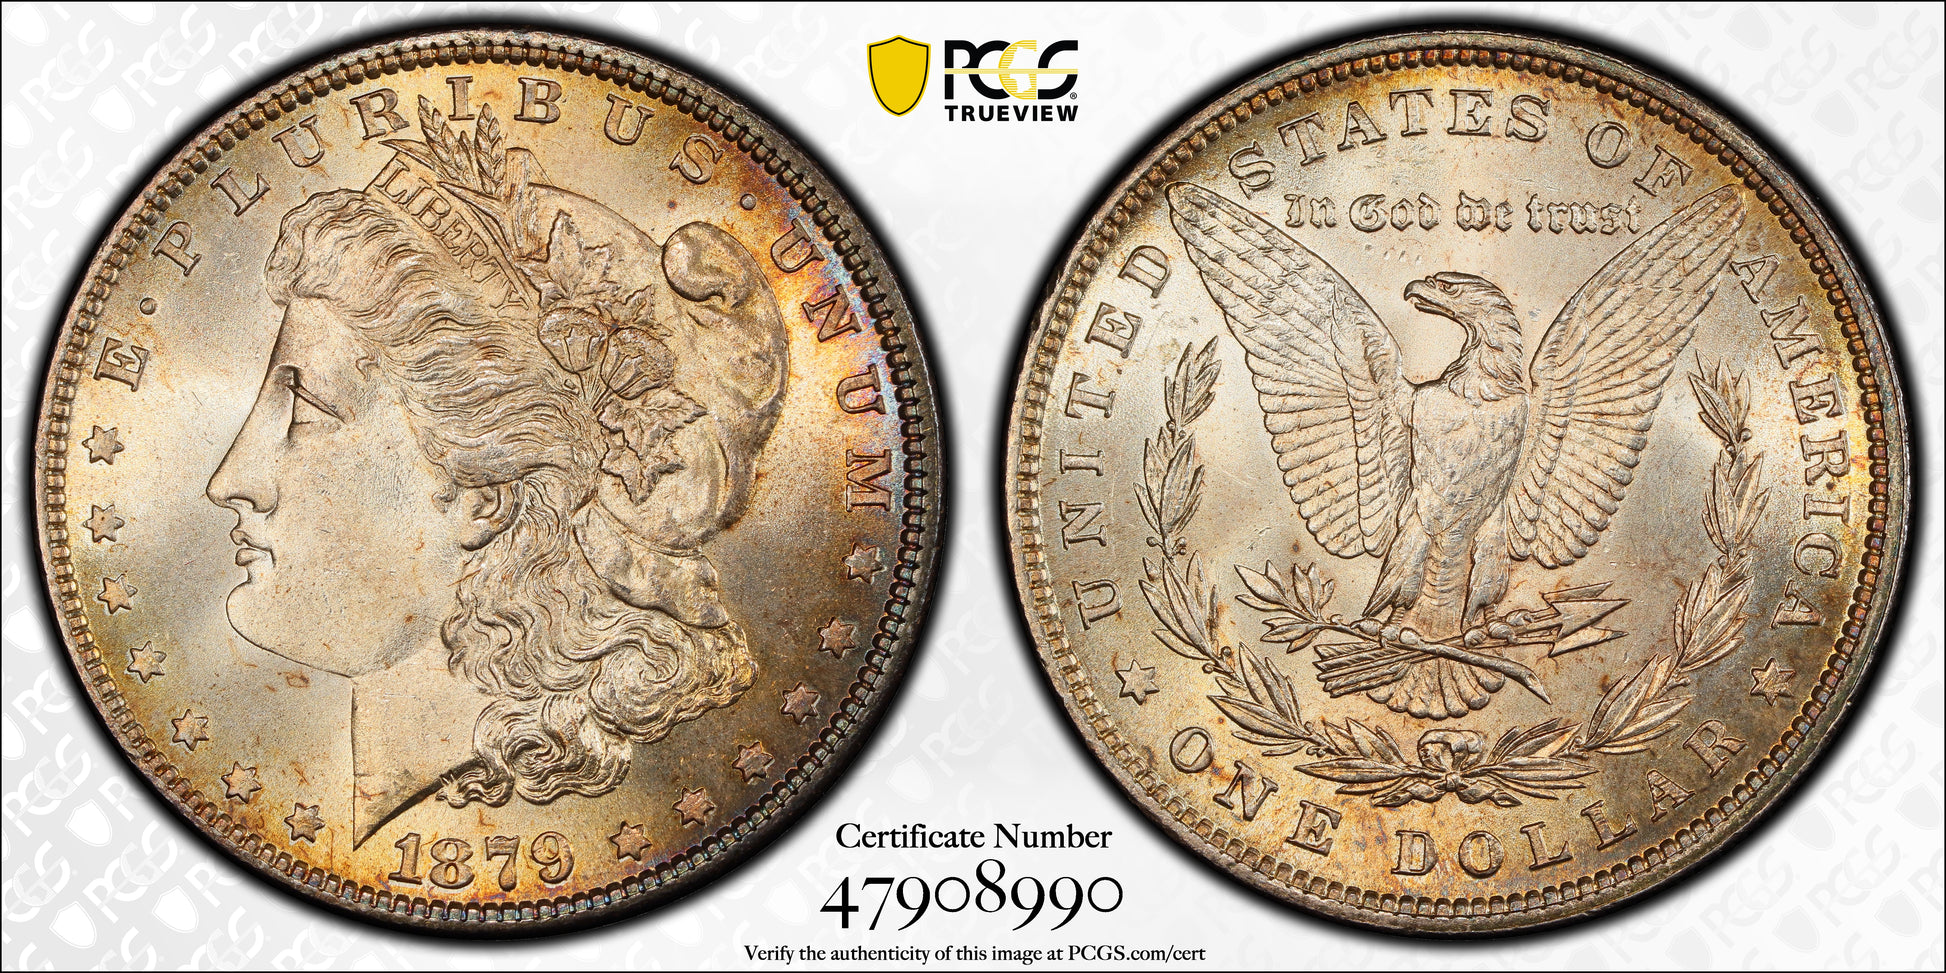 1879 Morgan Dollar $1 PCGS MS66 - TONED! Trueview